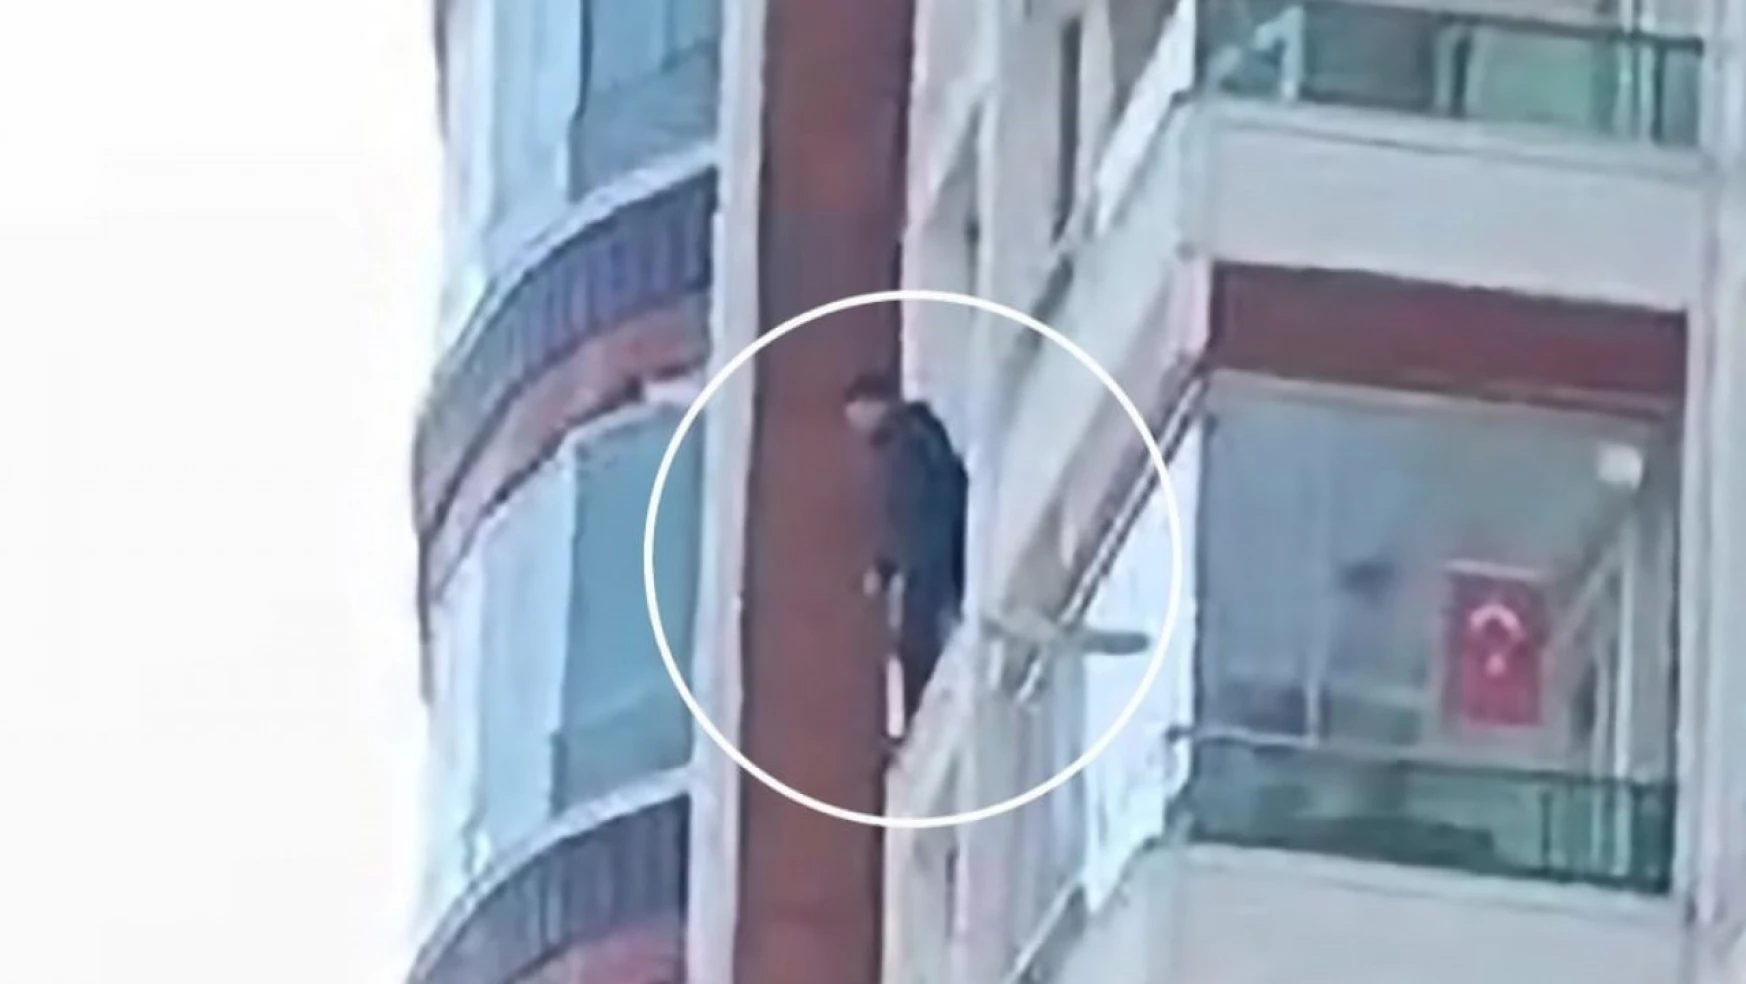 Samsun'da eşinin polise şikayet ettiği kuaför, 8. katın penceresinde intihara kalkıştı